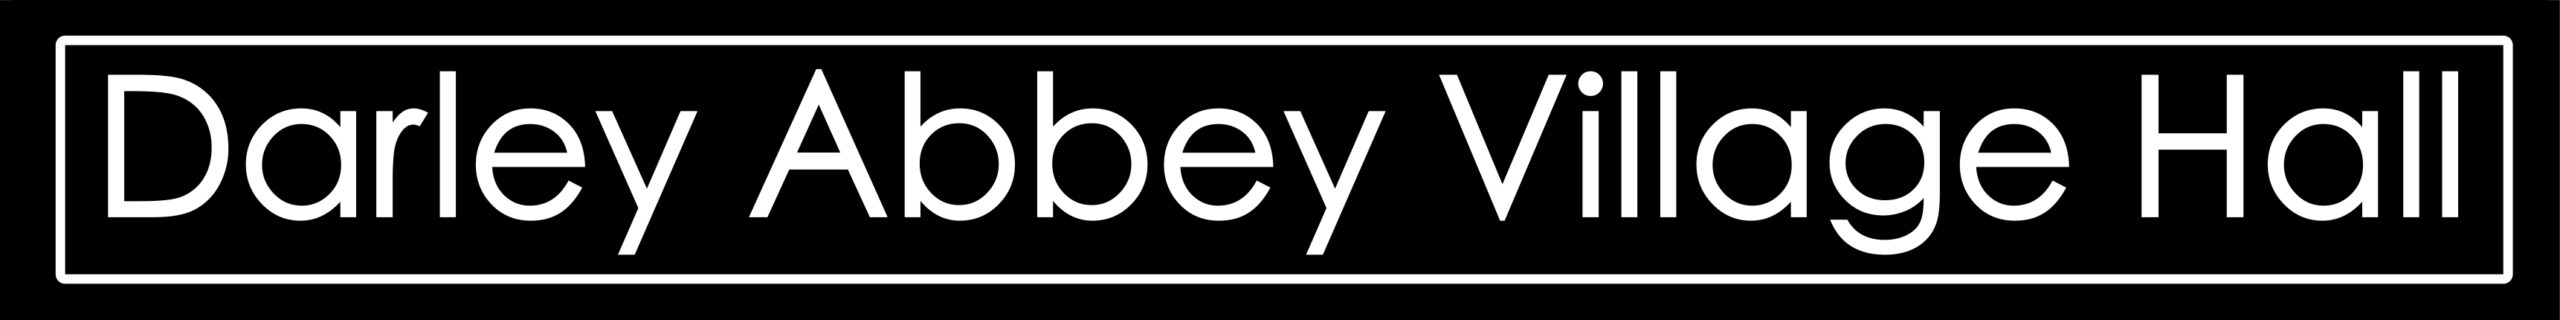 Darley Abbey Village Hall Logo